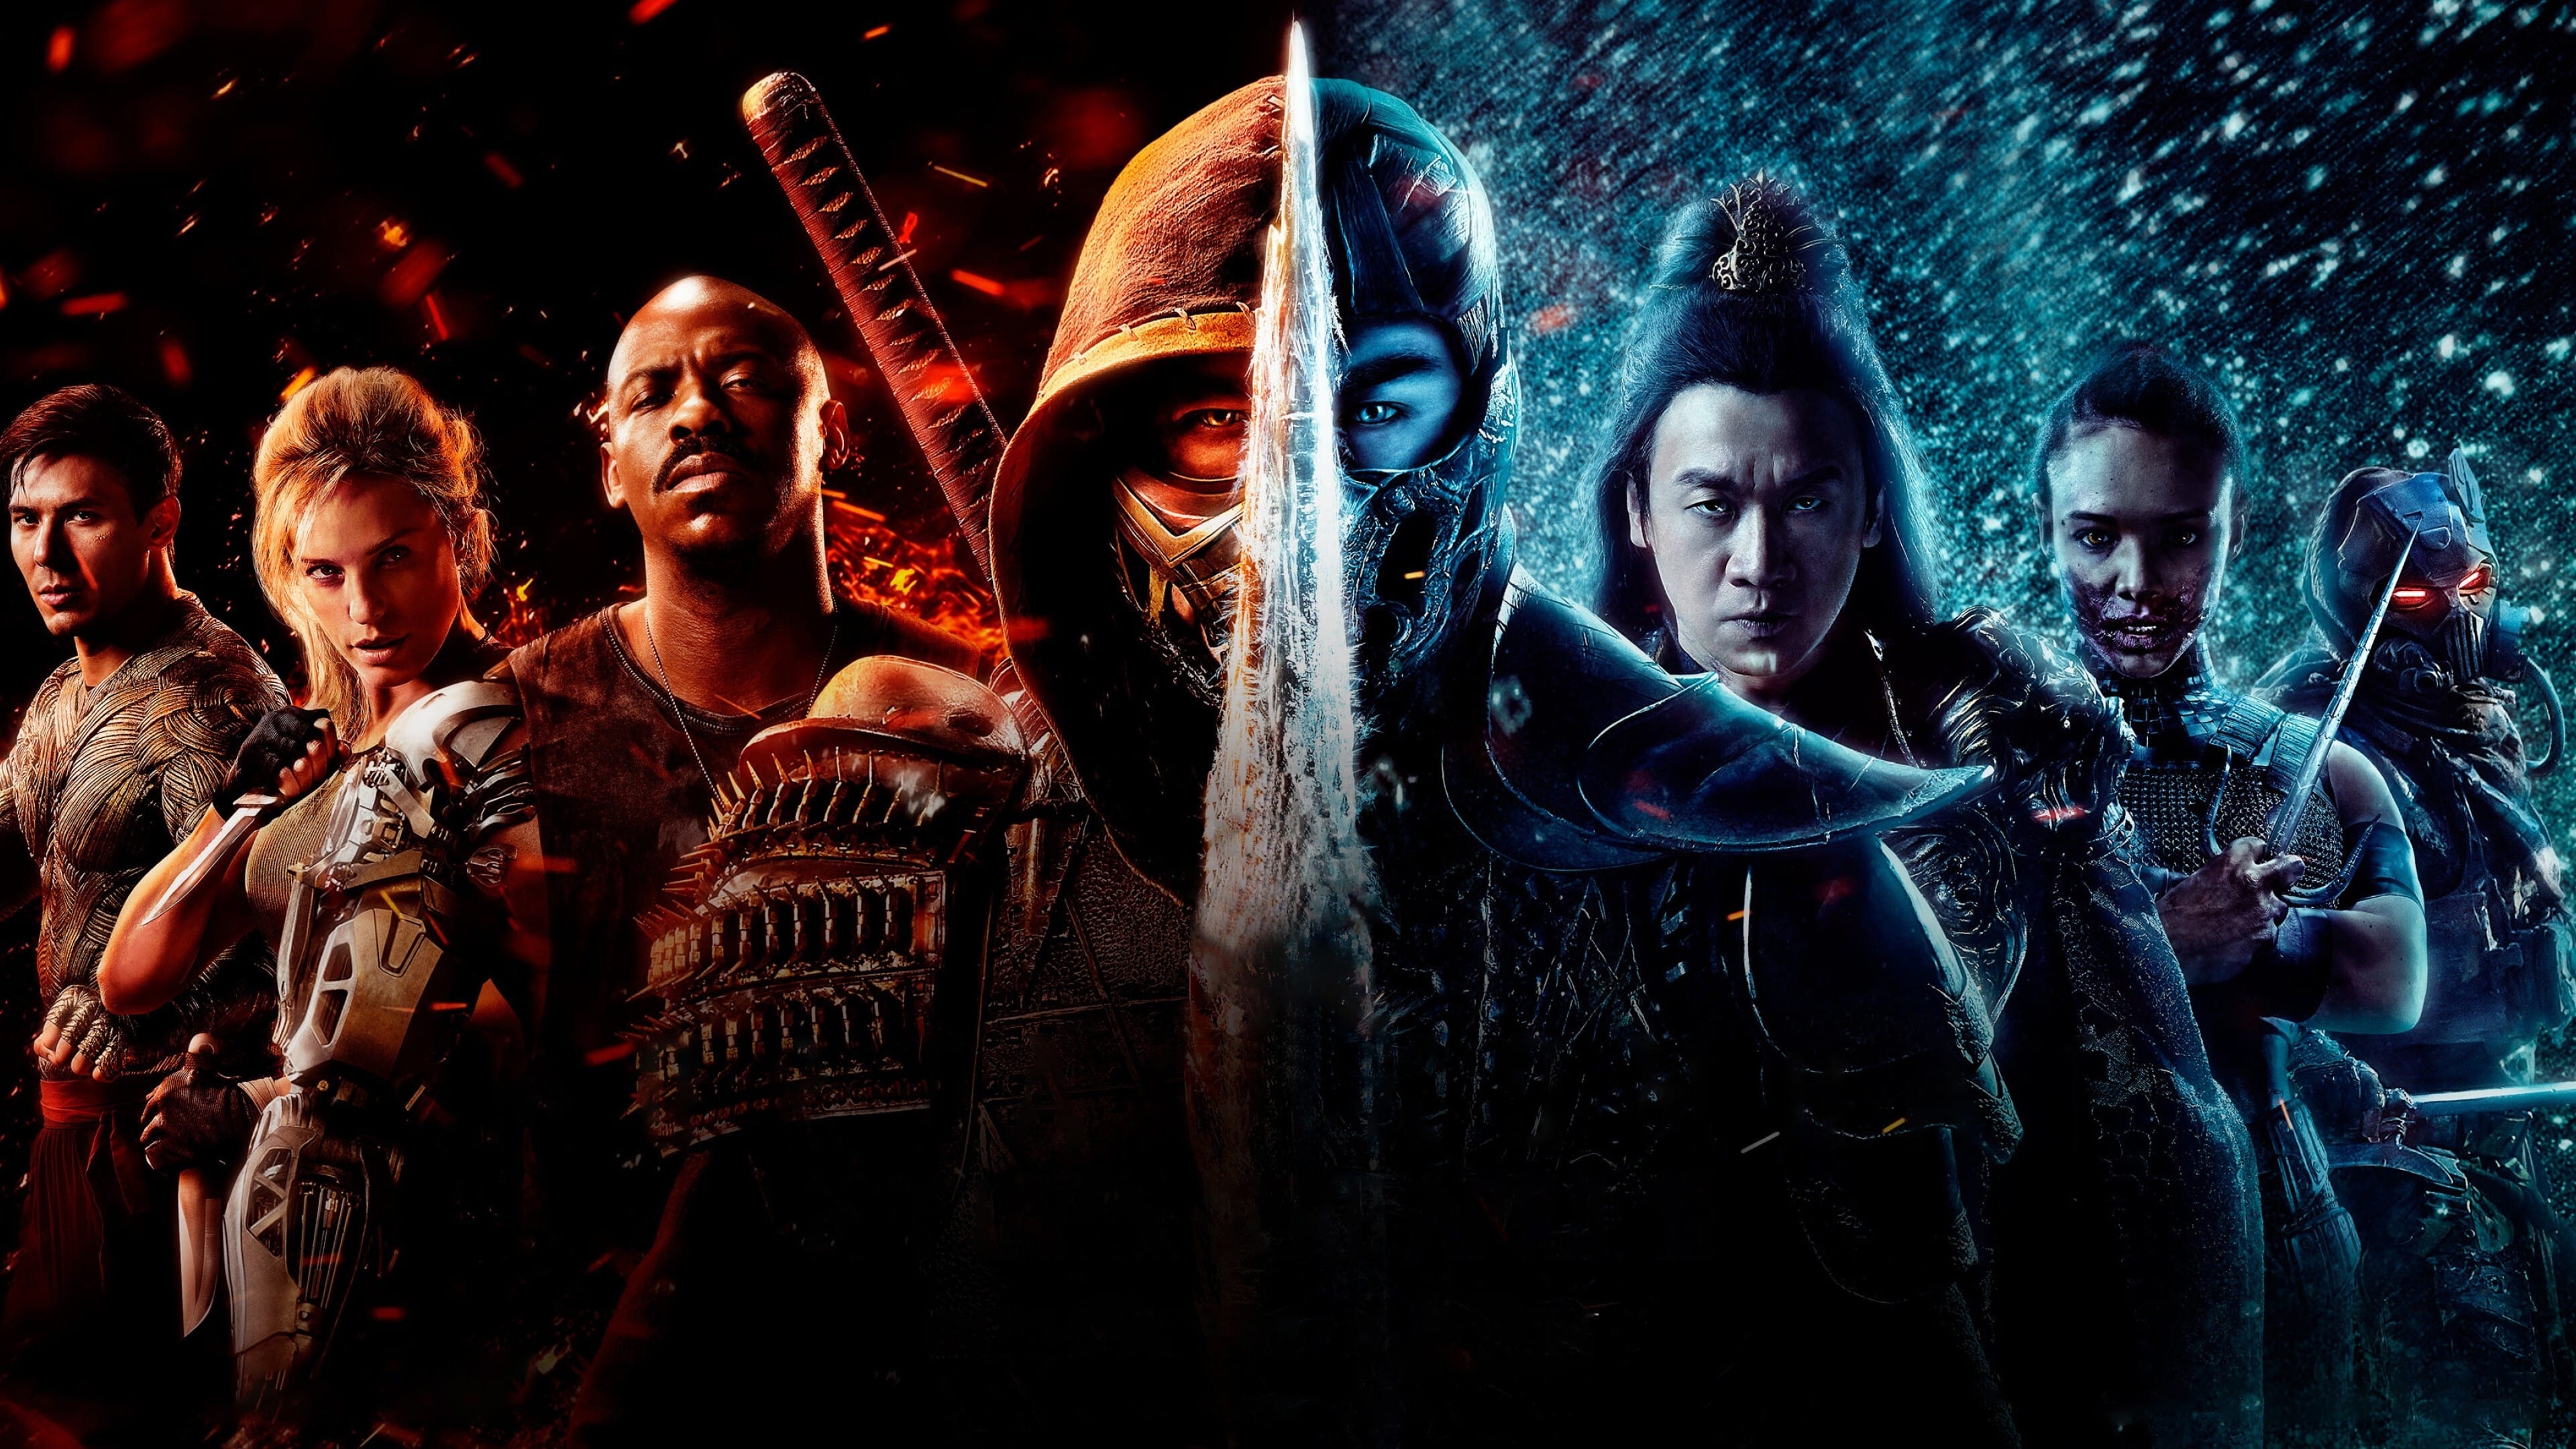 มอร์ทัล คอมแบท Mortal Kombat ออนไลน์โดยสมบูรณ์ในปี 2021